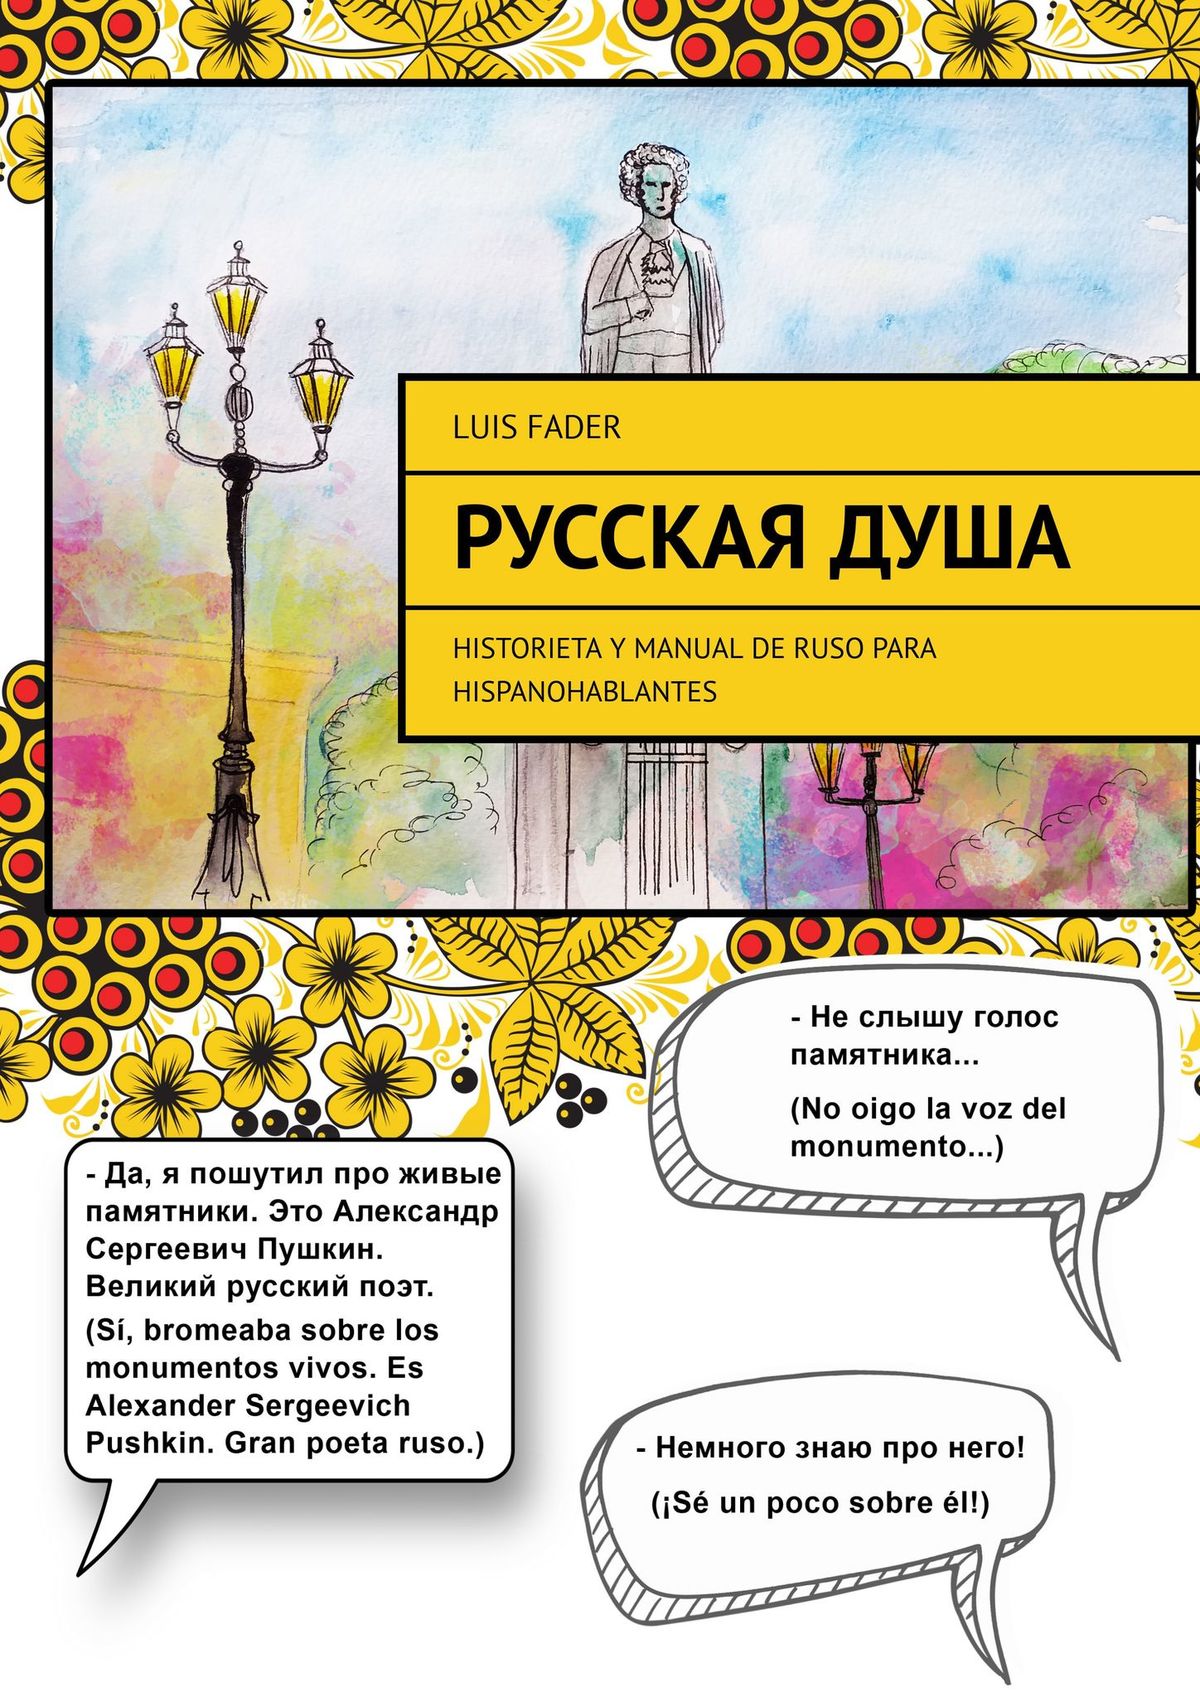 Русская душа. Historieta y manual de ruso para hispanohablantes